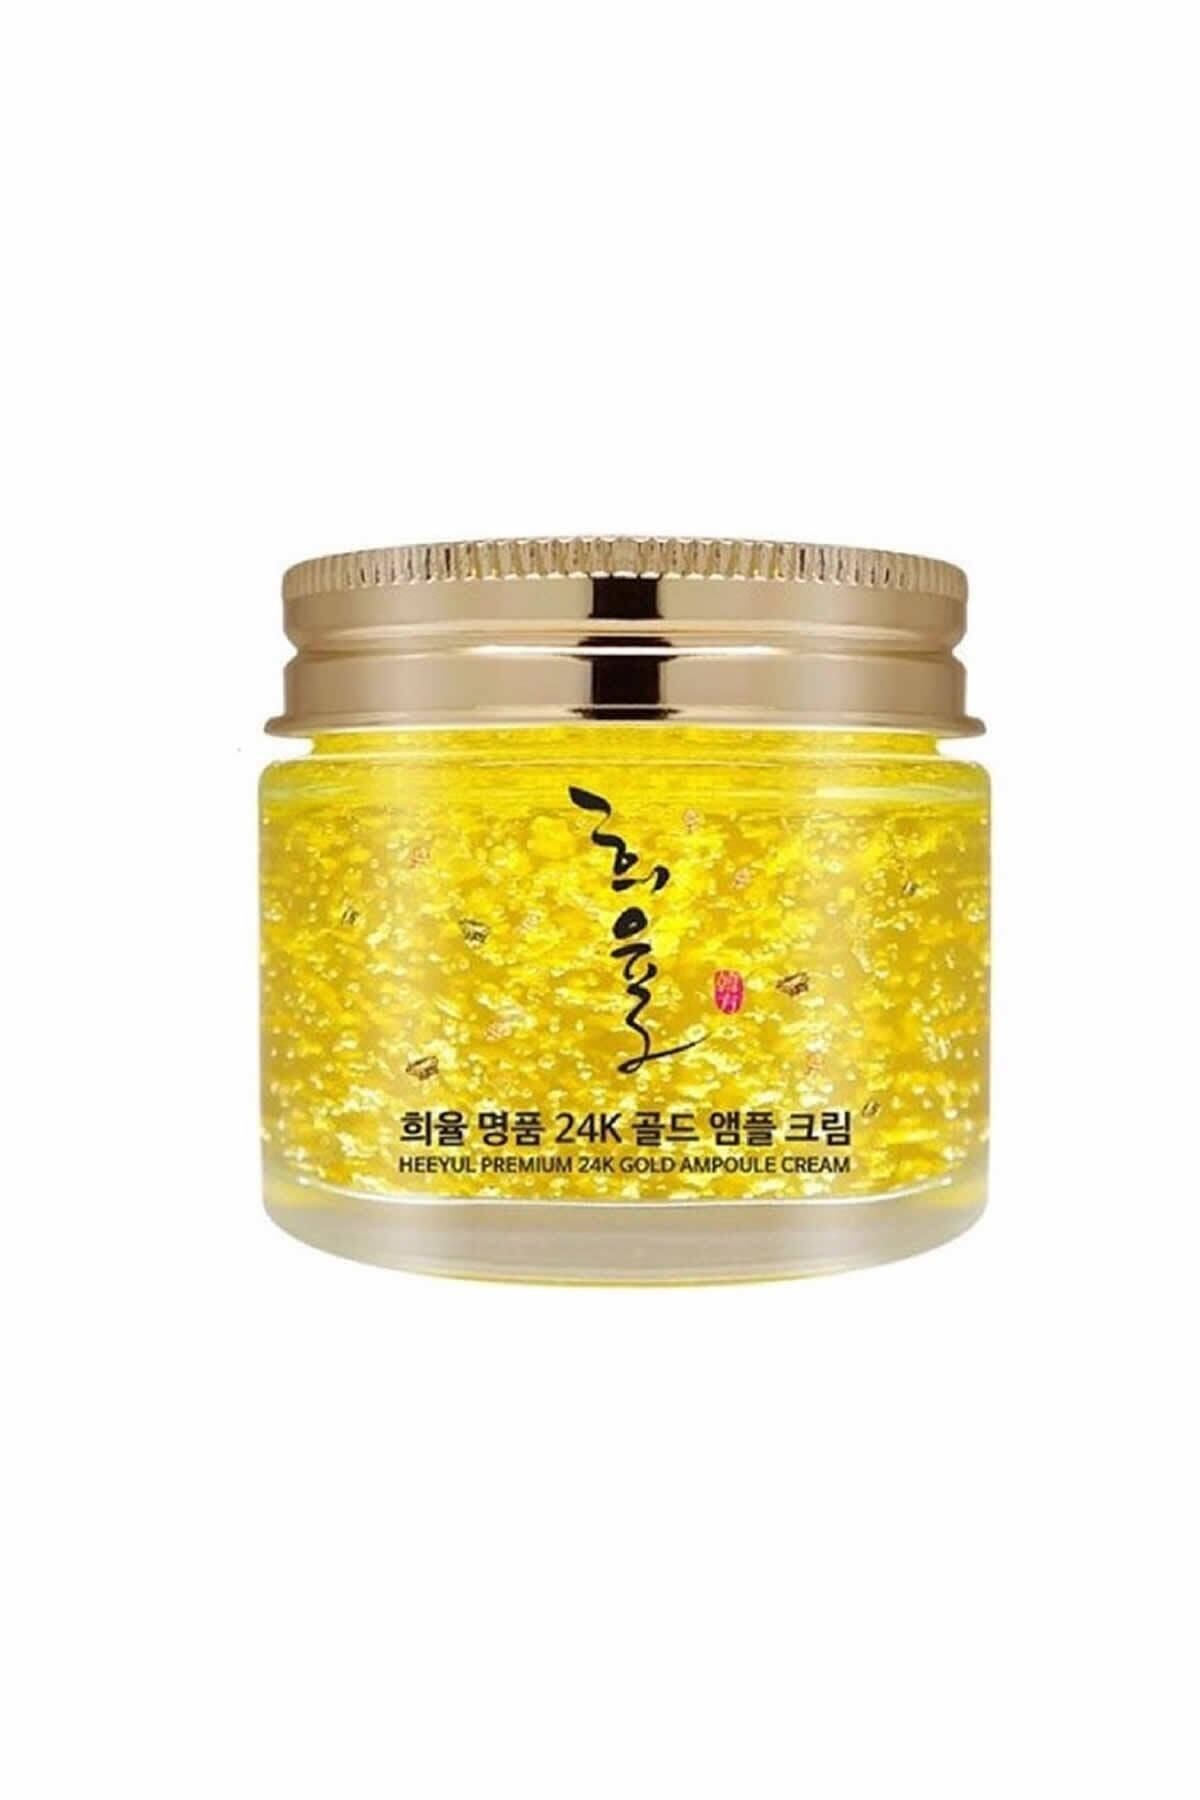 LEBELAGE Saf Altın Ve Kolajen Içeren Yaşlanma Karşıtı Krem Heeyul Premium 24k Gold Ampoule Cream